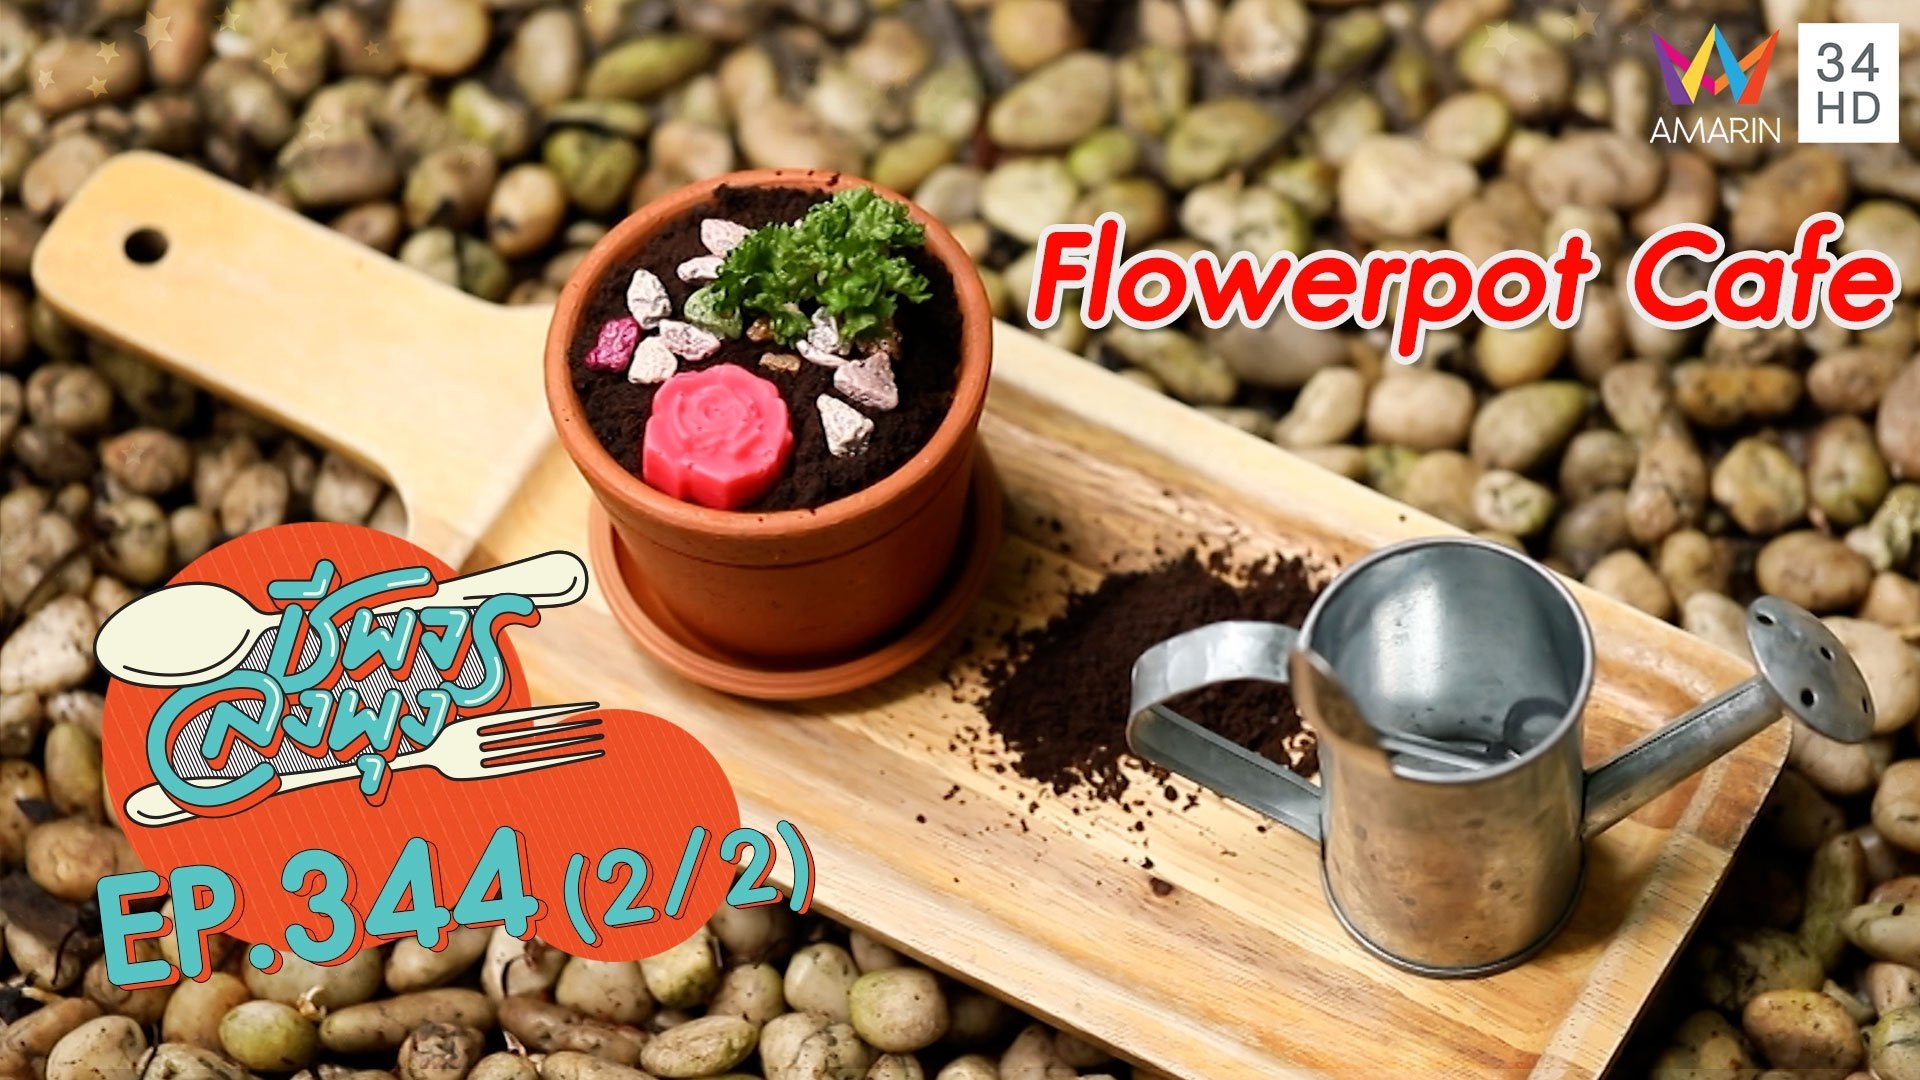 เค้กกระถางน่ารักๆ แสนอร่อย @ ร้าน Flowerpot Cafe | ชีพจรลงพุง | 21 พ.ย. 64 (2/2) | AMARIN TVHD34